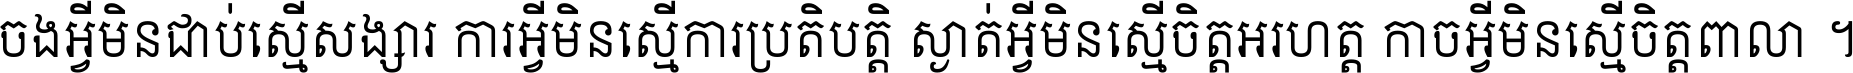 Khmer OS Siemreap